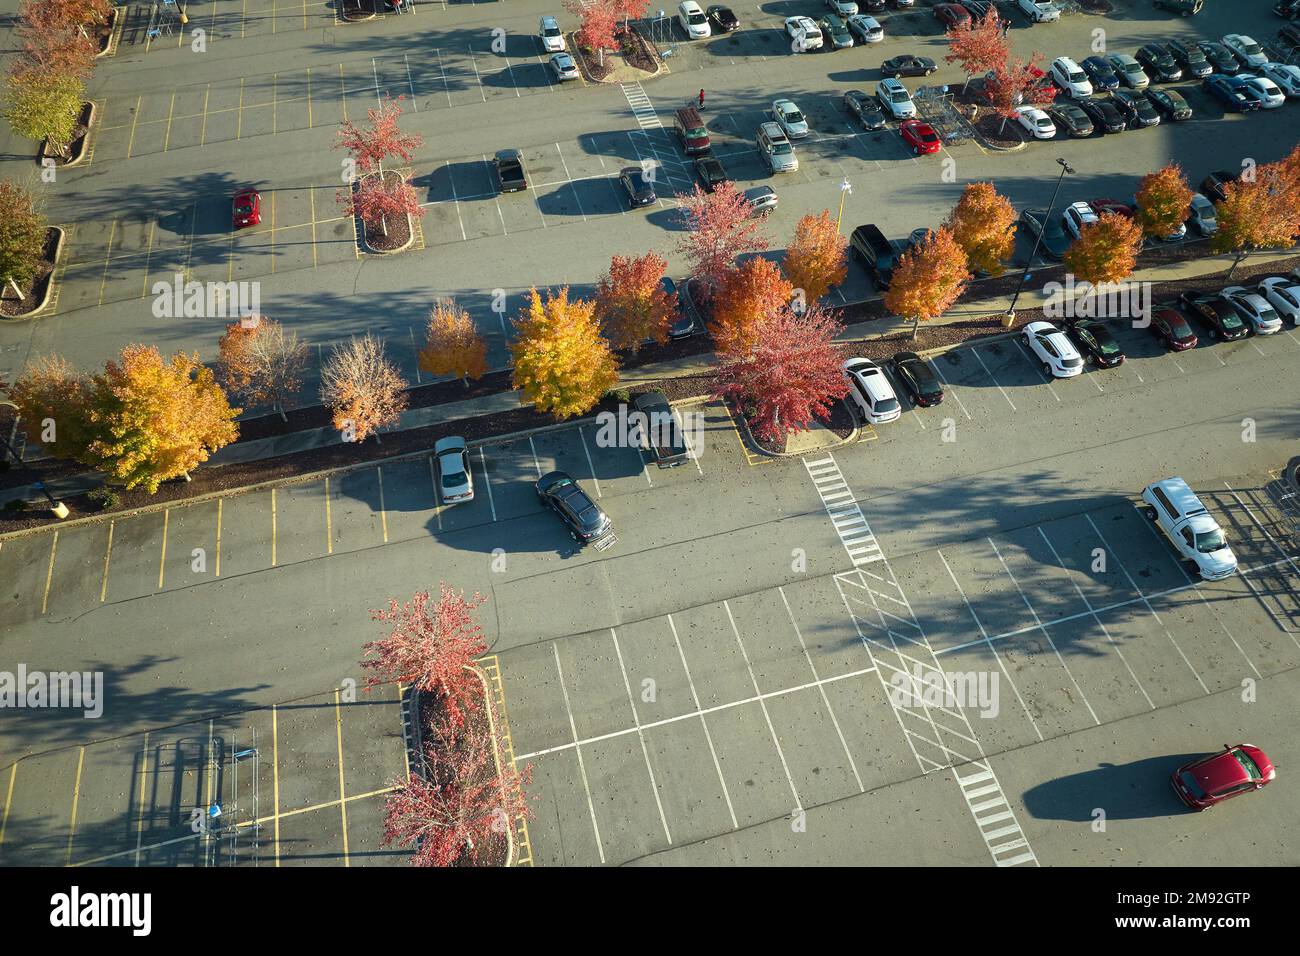 Luftaufnahme vieler farbenfroher Autos, die auf dem Parkplatz geparkt sind, mit Linien und Markierungen für Parkplätze und Wegbeschreibungen. Platz für Fahrzeuge vor einem Stockfoto